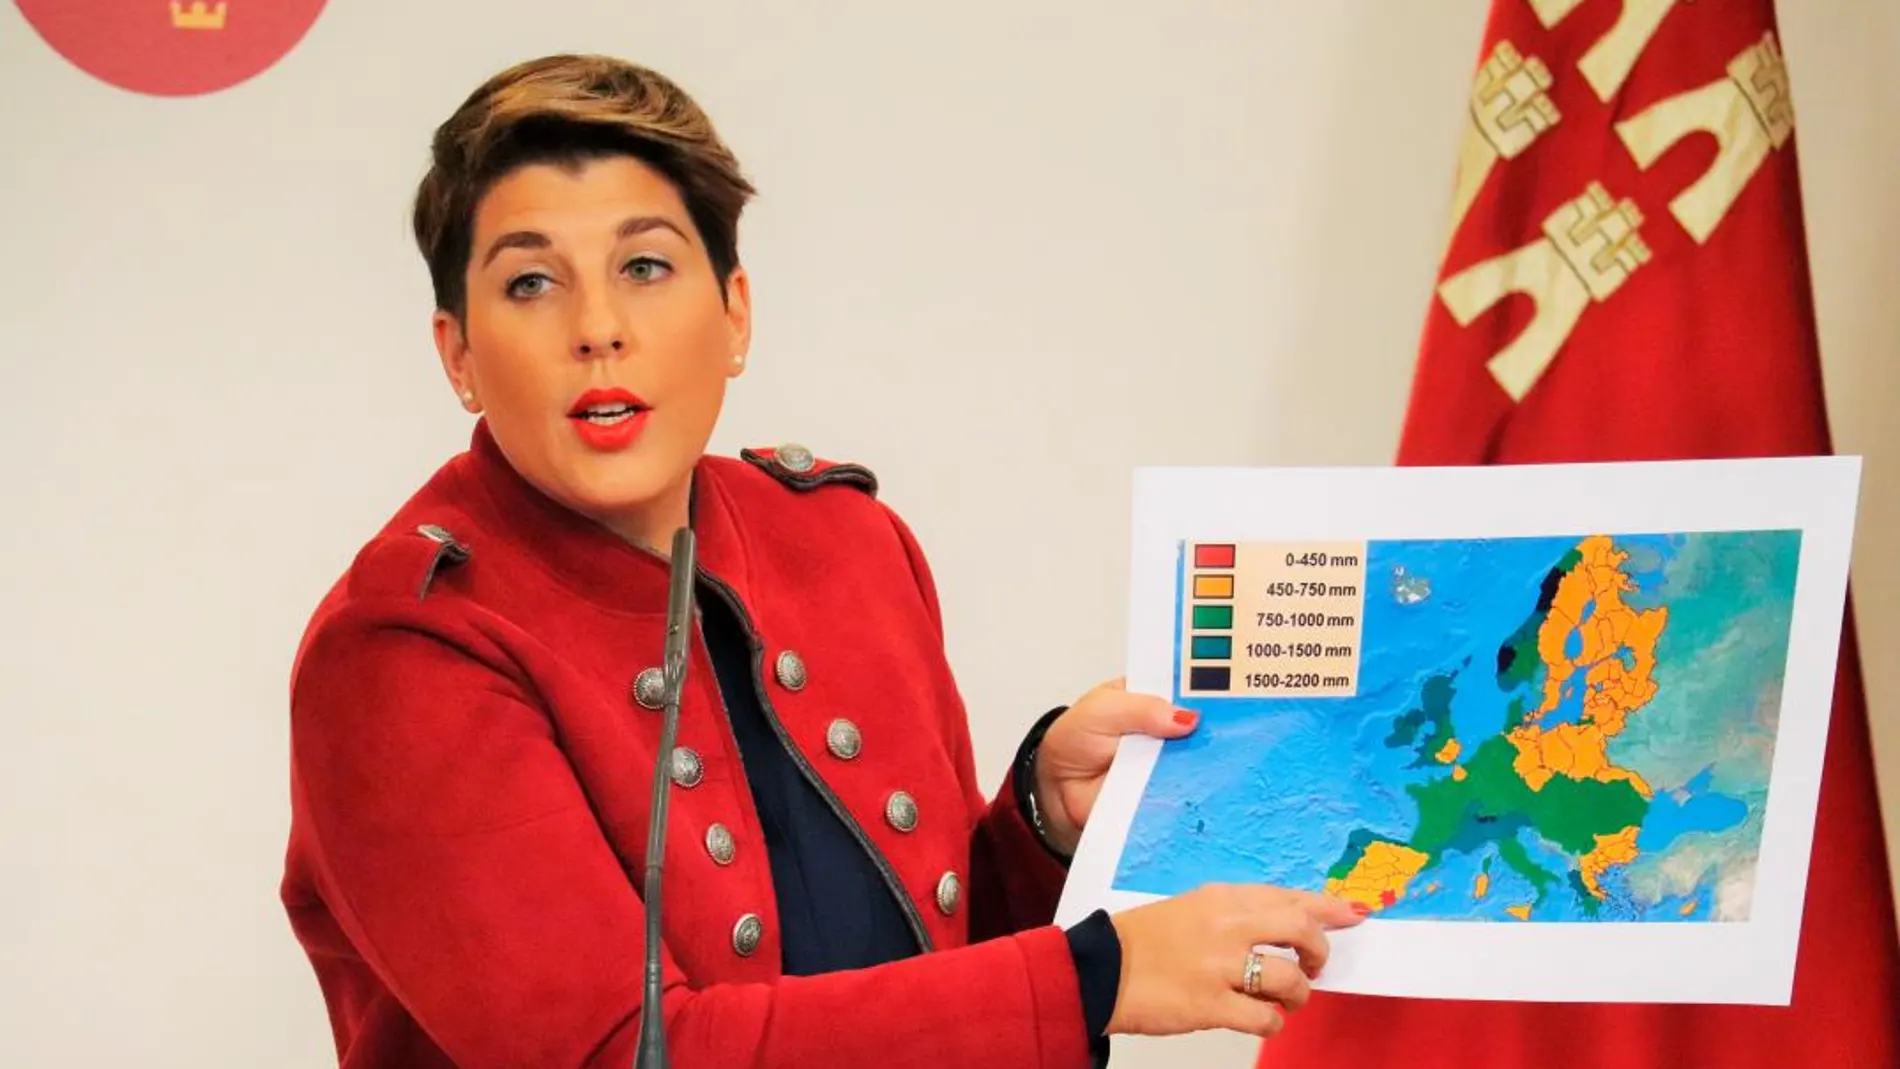 La portavoz del Gobierno regional, Noelia Arroyo, mostró ayer un mapa pluviométrico en el que se muestra que la cuenca del Segura es en la que menos llueve con respecto al resto de Europa